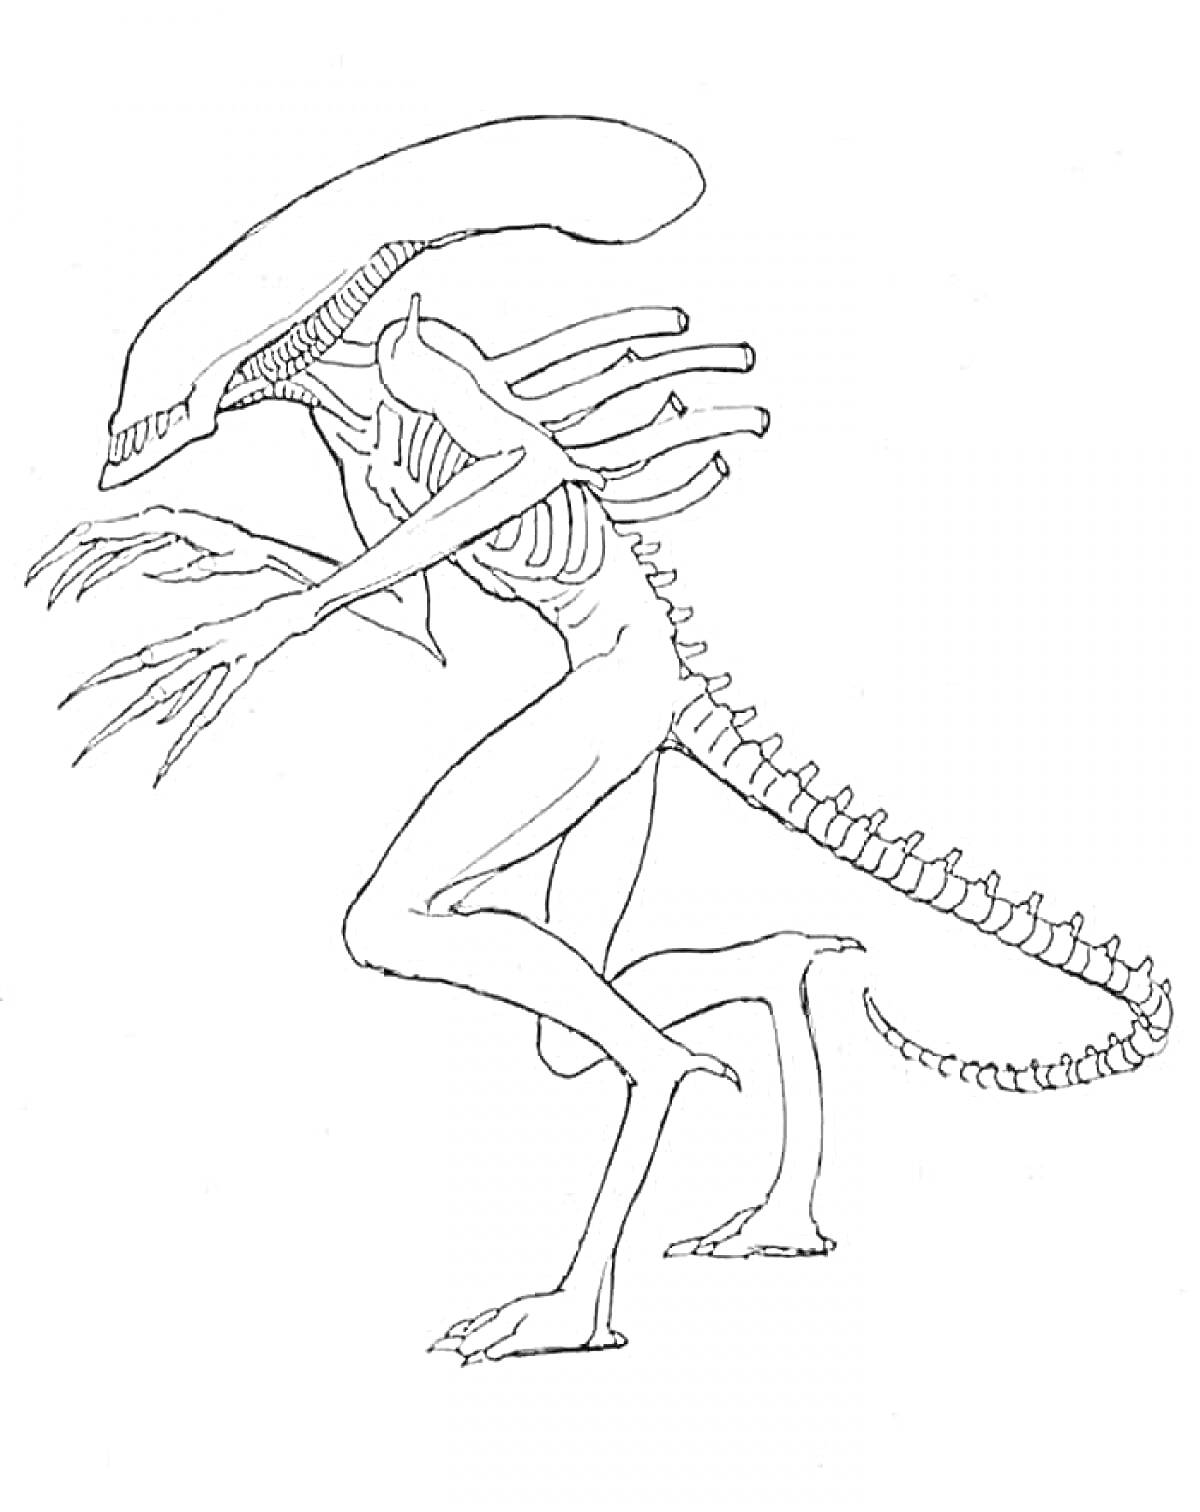 Раскраска Существо с длинной головой, когтями и хвостом, напоминающее монстра или пришельца